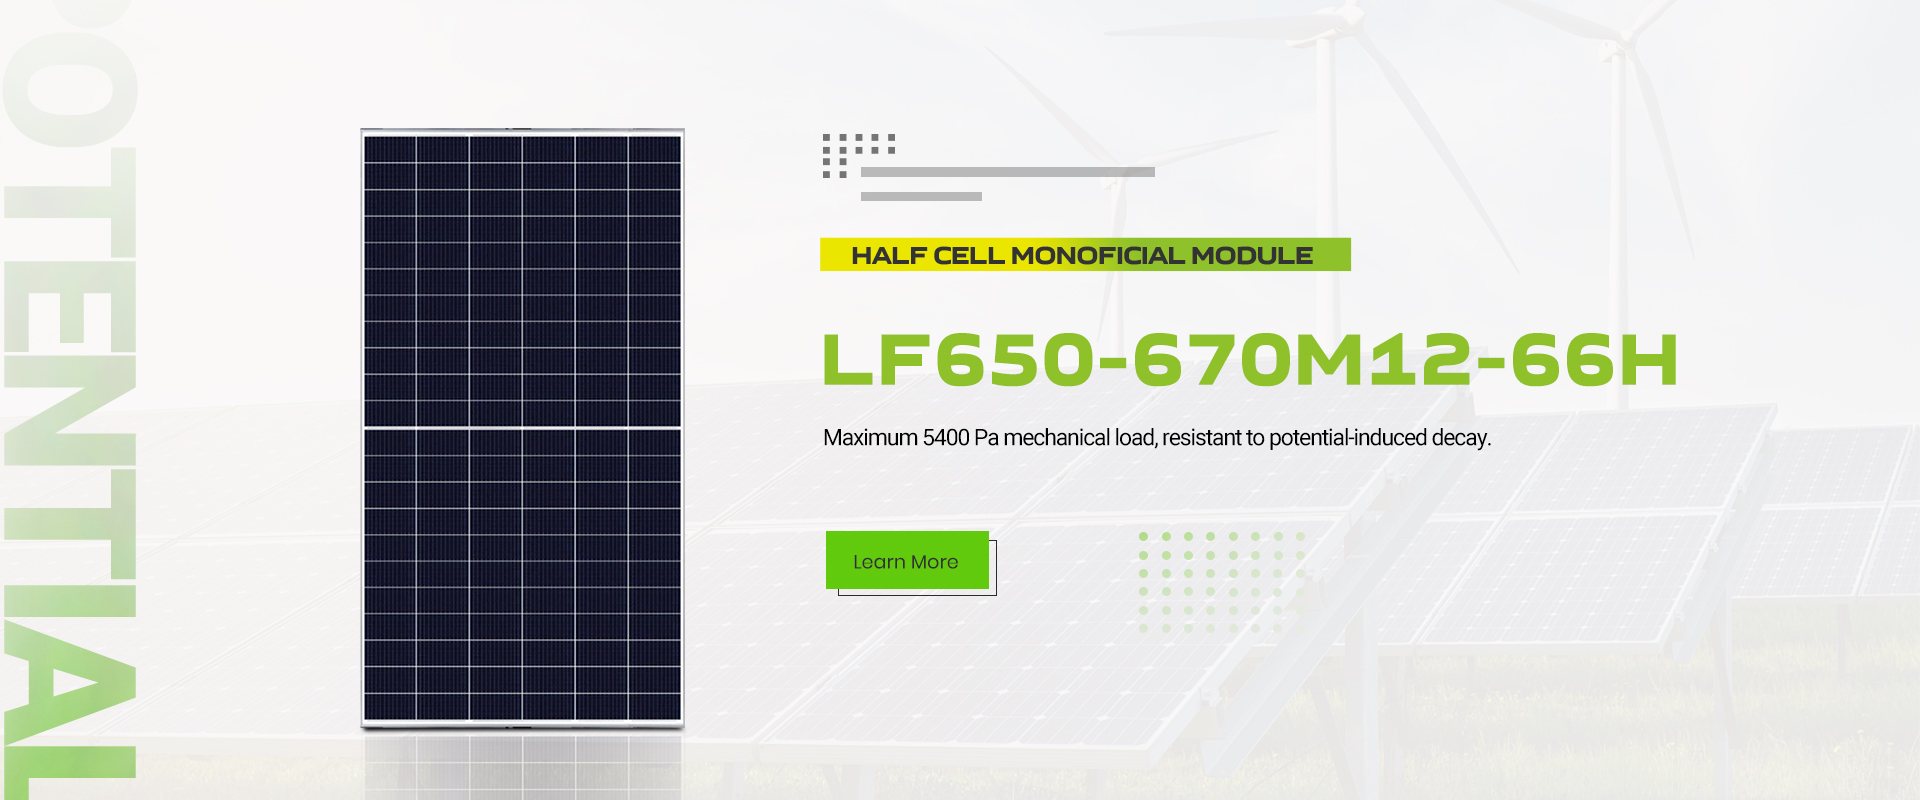 lefeng-عمده-بازده-بالا-132-نیمه سلولی-دو رخ-خورشیدی-ماژول-645-670w-مونوکریستالی-سیلیکون-فتوولتائیک-ماژول-210 میلی متر-محصول-پانل-خورشیدی